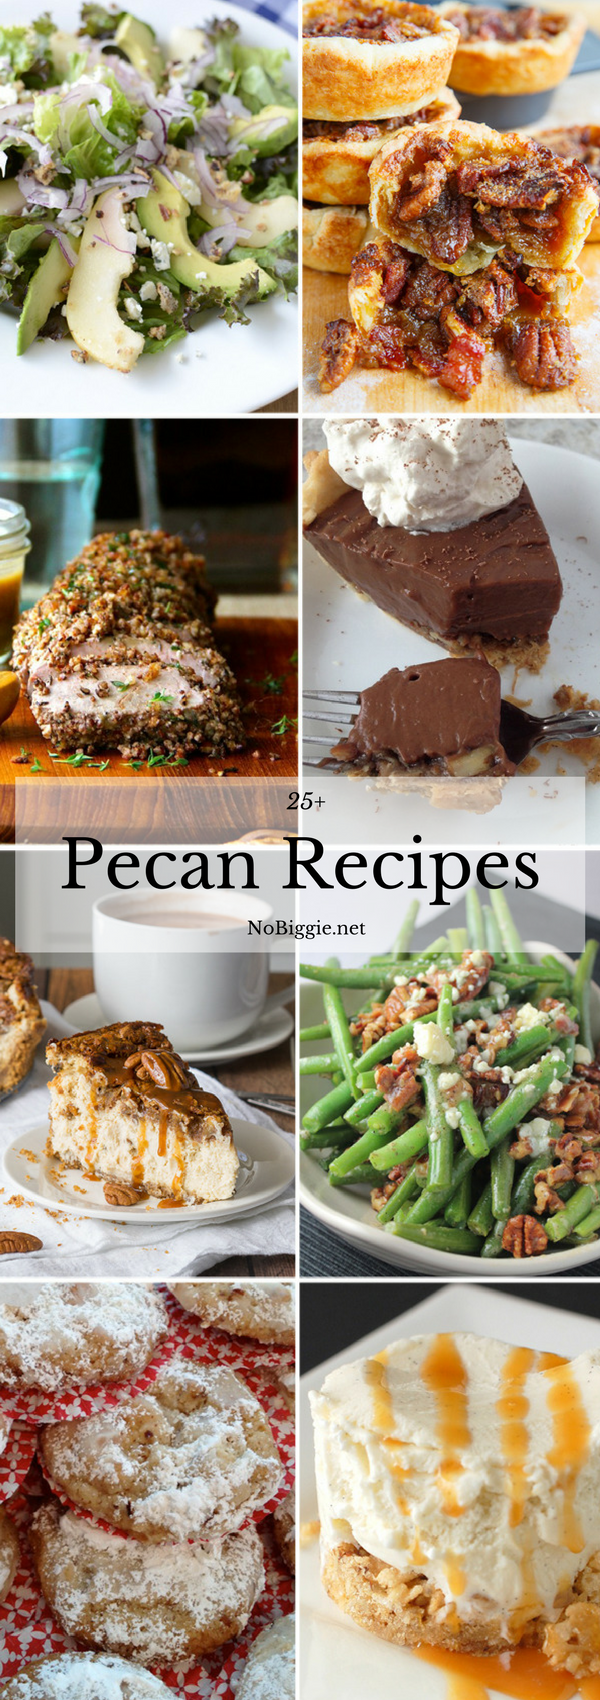 25+ Pecan Recipes | NoBiggie.net